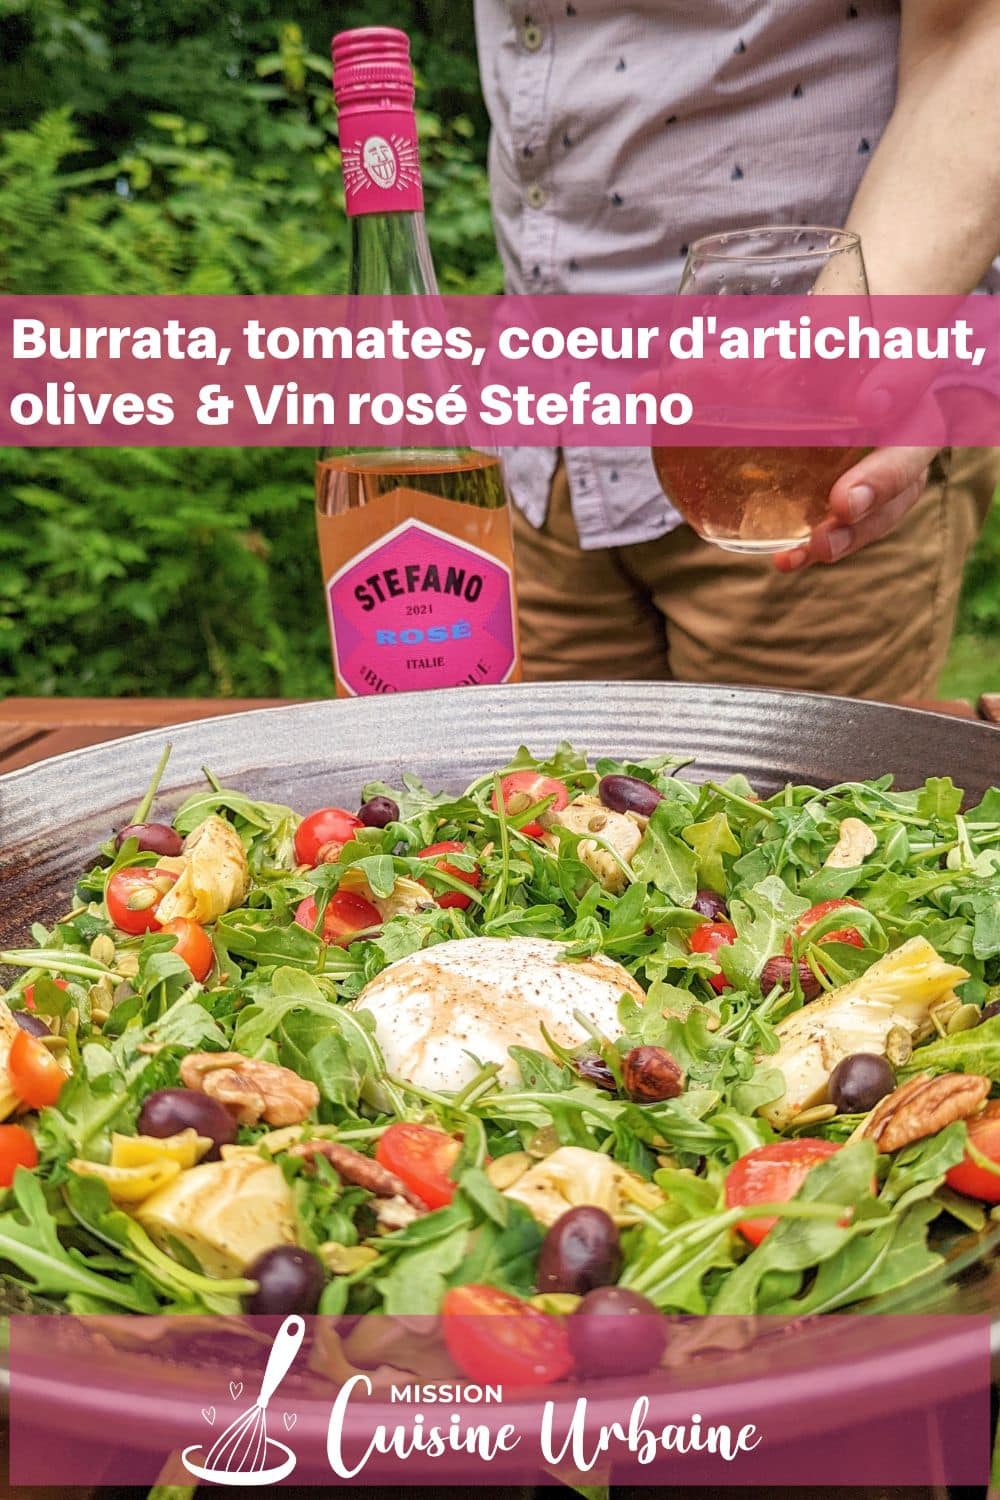 Vin rosé Stefano et salade roquette burrata olive et coeurs d'artichaut